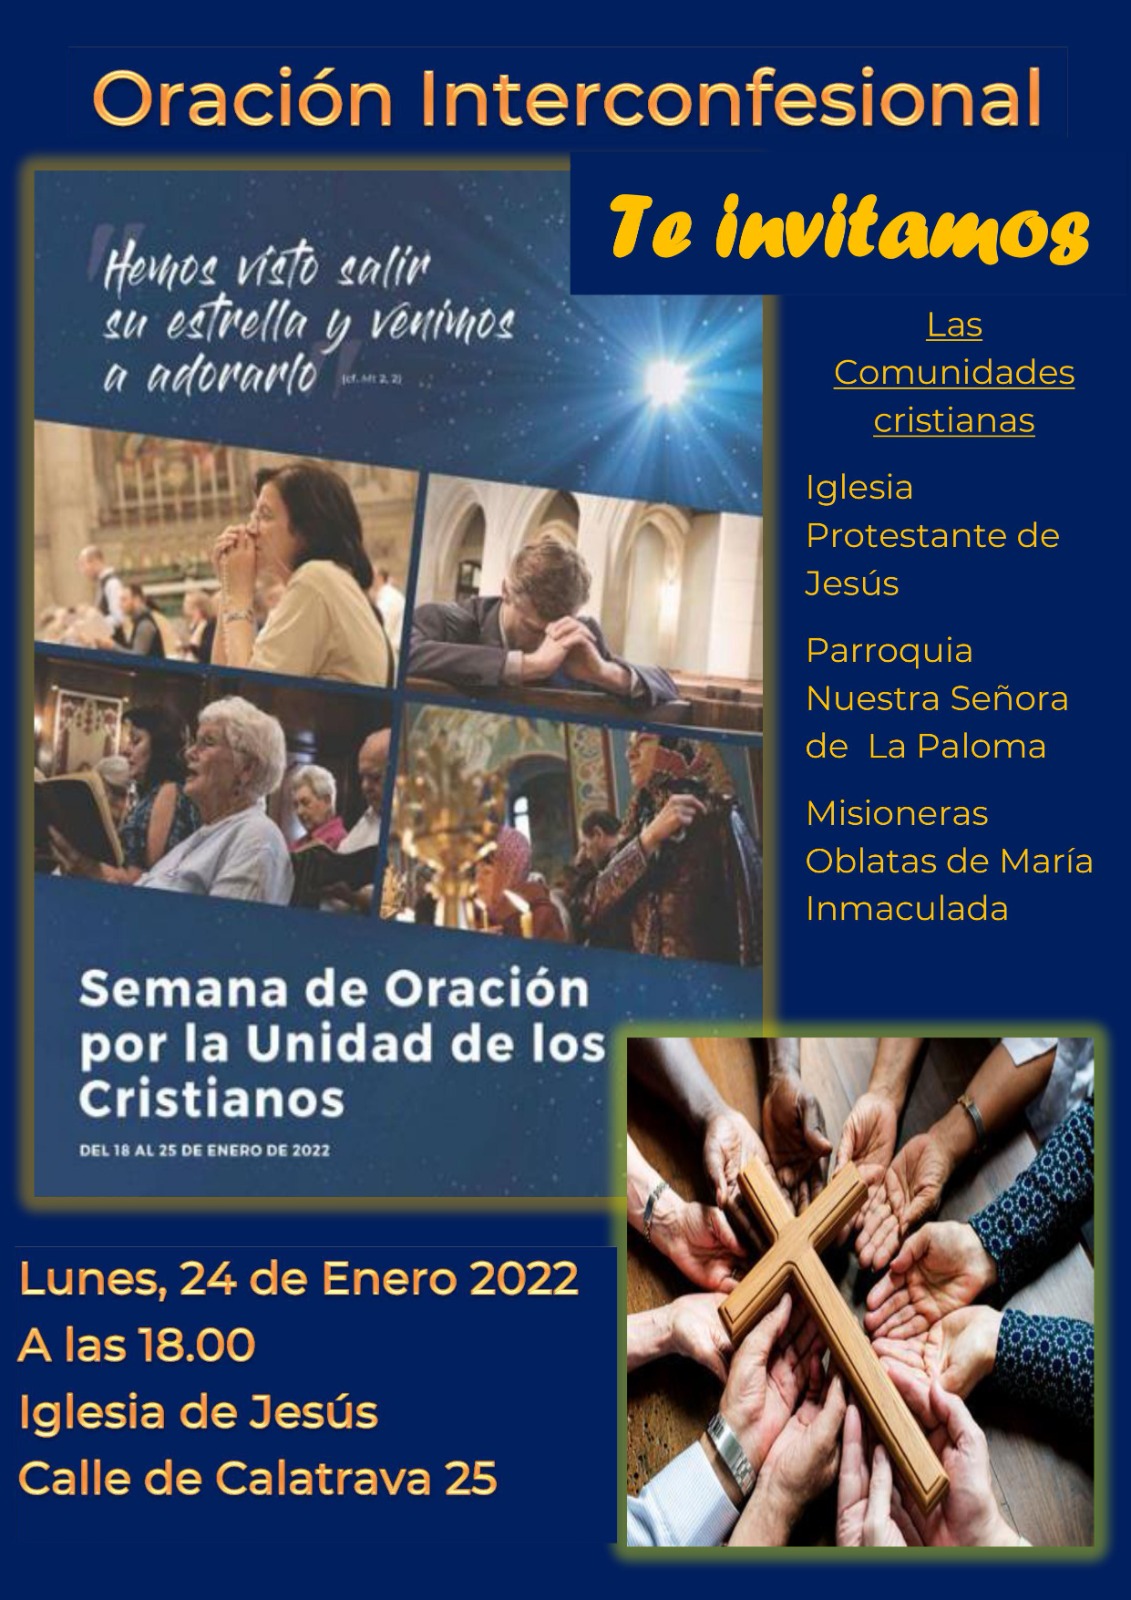 Oracion-interconfesional-Semana-unidad-cristianos-24-01-2022@pmillancayetano